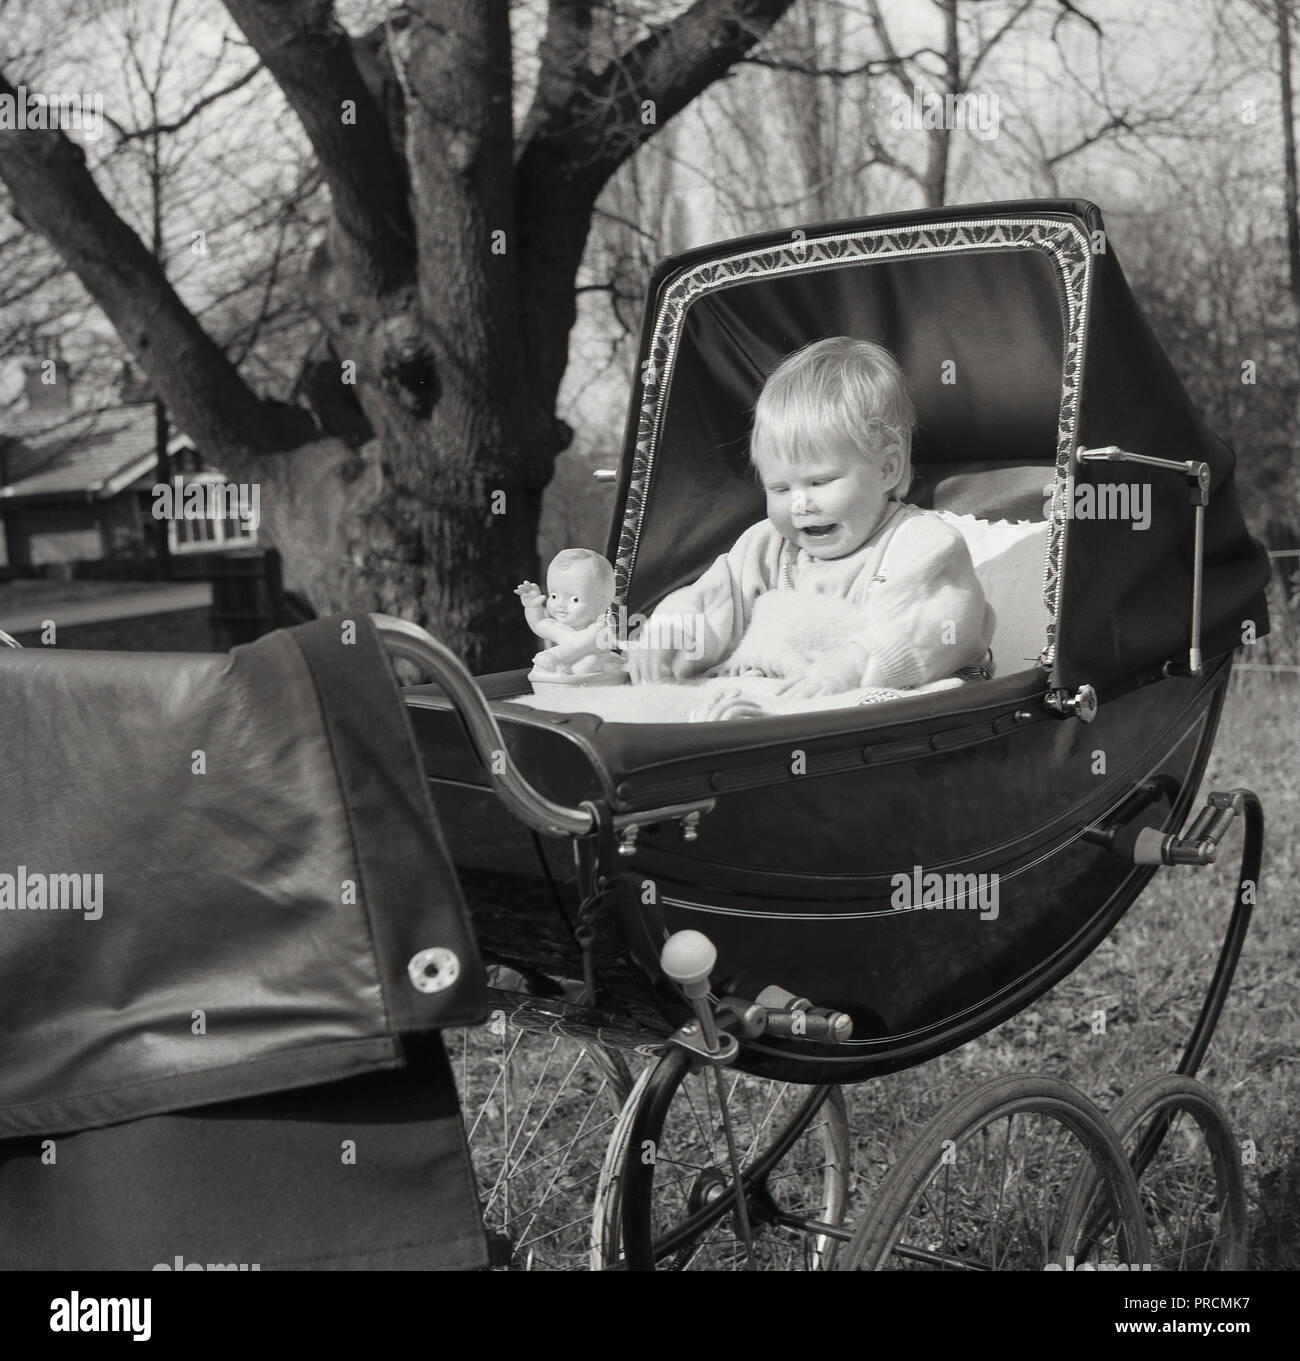 Années 1950, historiques, heureux bébé, un garçon (enfant) assis bien droit dans un landau capucines ou la pram avec capot, avec son jouet figure à côté de lui, en Angleterre, UK. Banque D'Images